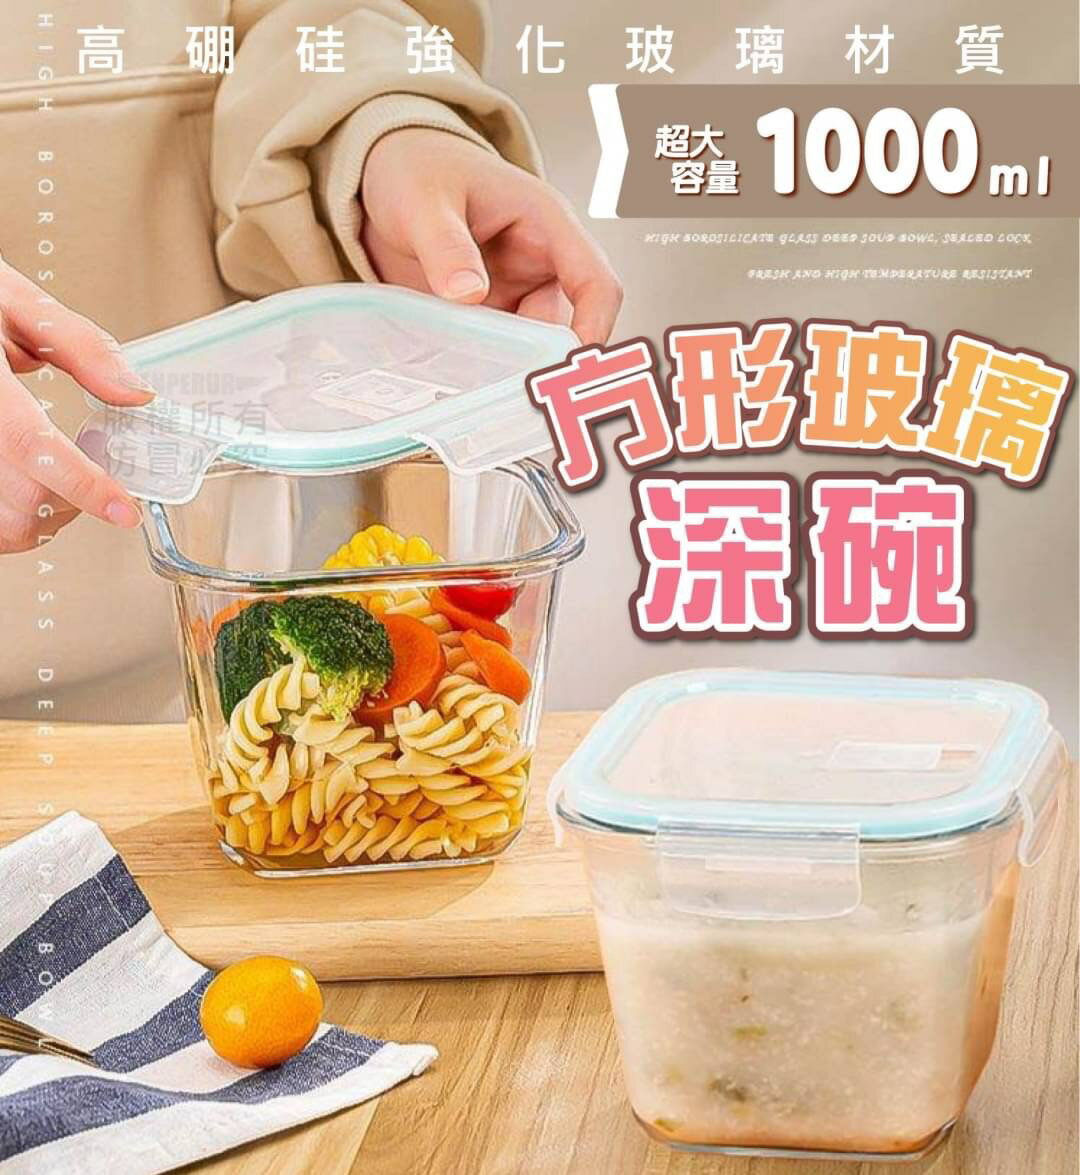 台灣現貨 方形玻璃保鮮盒 湯碗 密封罐 環保 微波 餐盒 便當盒